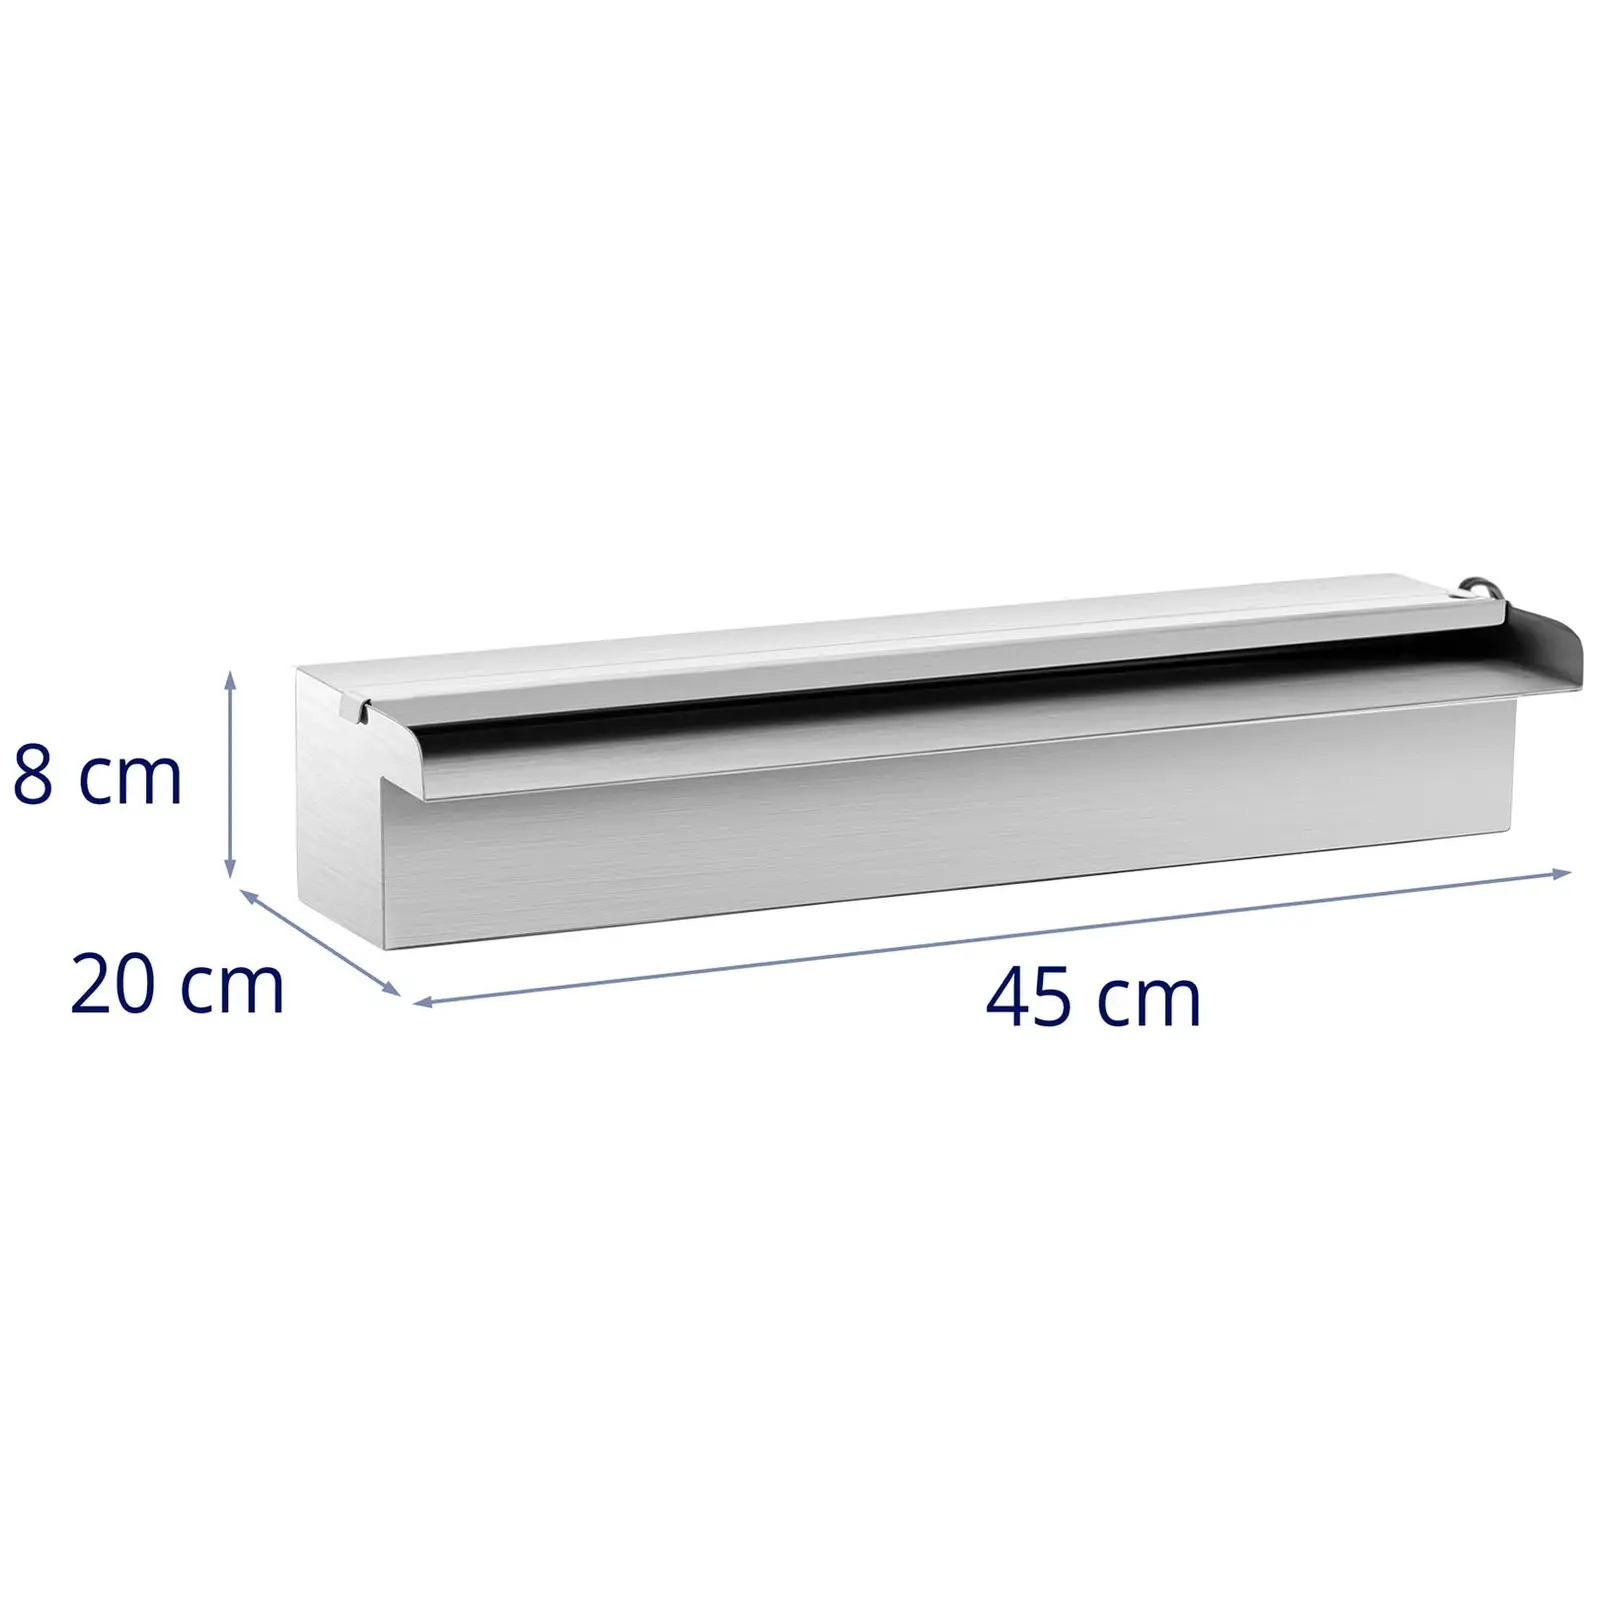 Vattenfall till pool - 45 cm - LED-belysning - Blå / vit - Öppet vattenutlopp